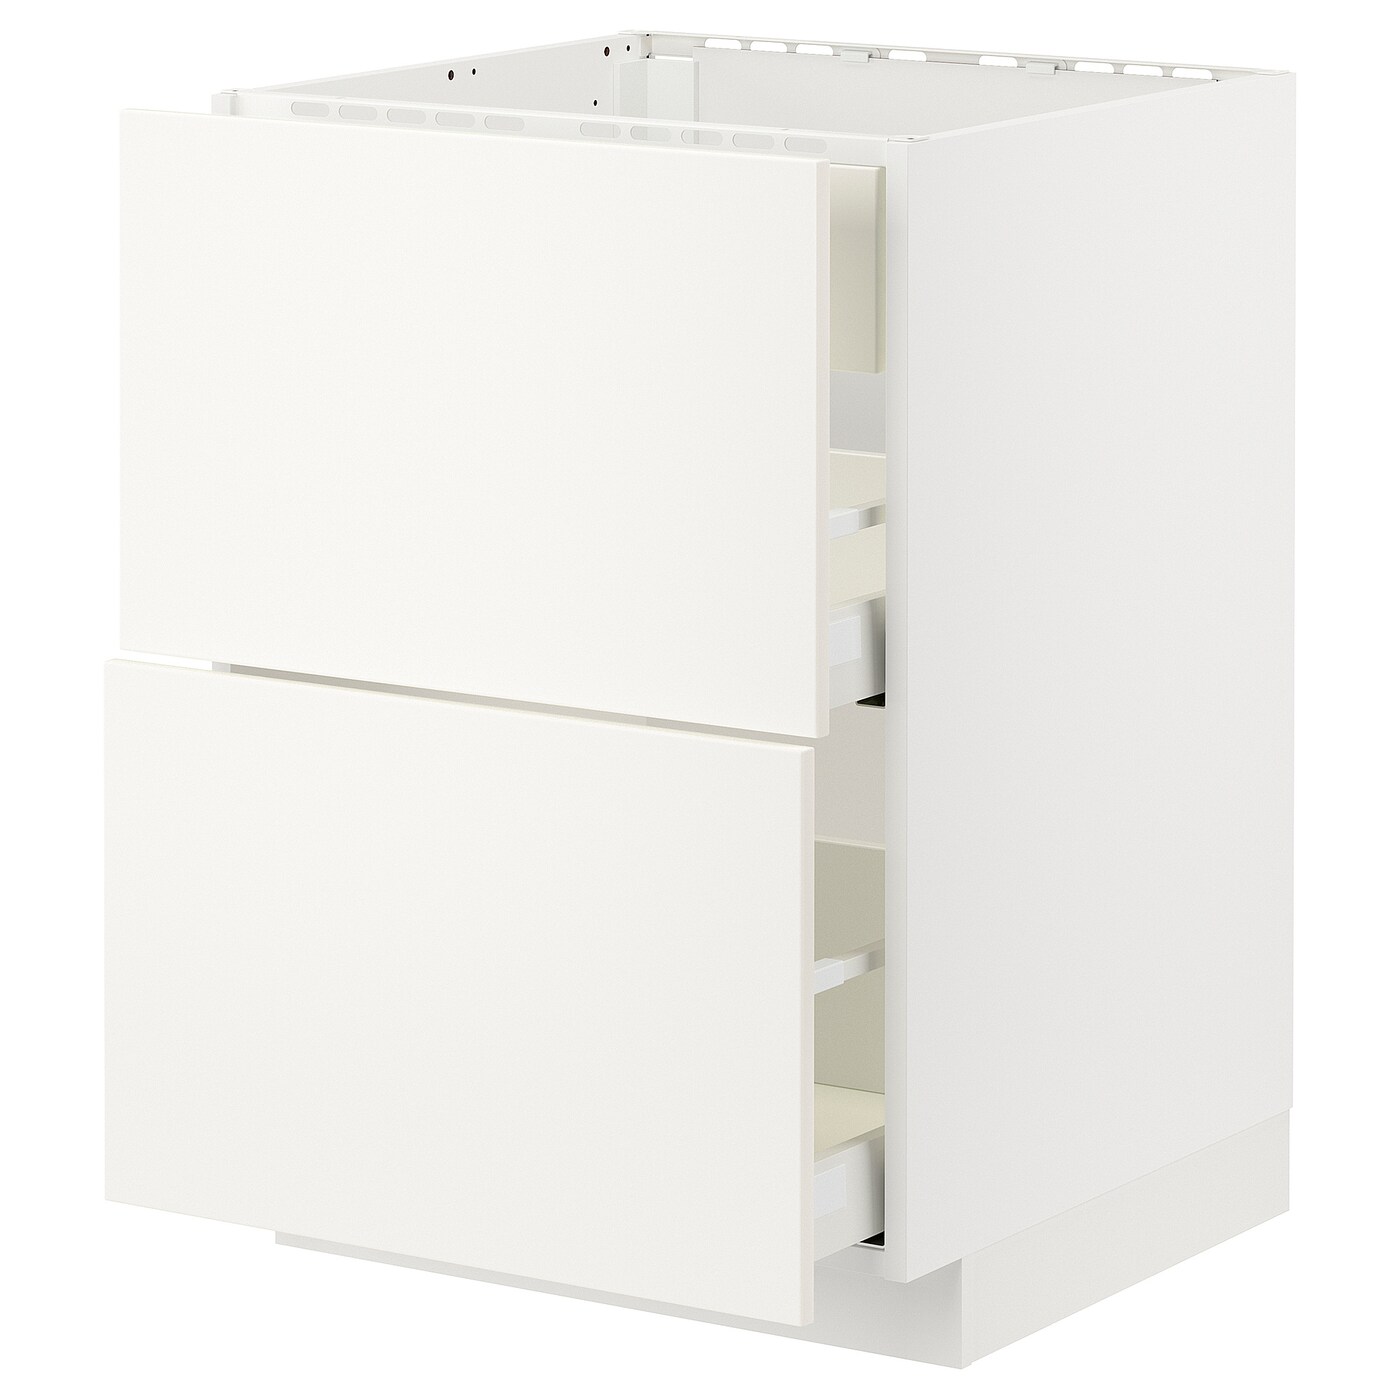 Напольный кухонный шкаф  - IKEA METOD MAXIMERA, 88x67,5x127,5см, белый, МЕТОД МАКСИМЕРА ИКЕА